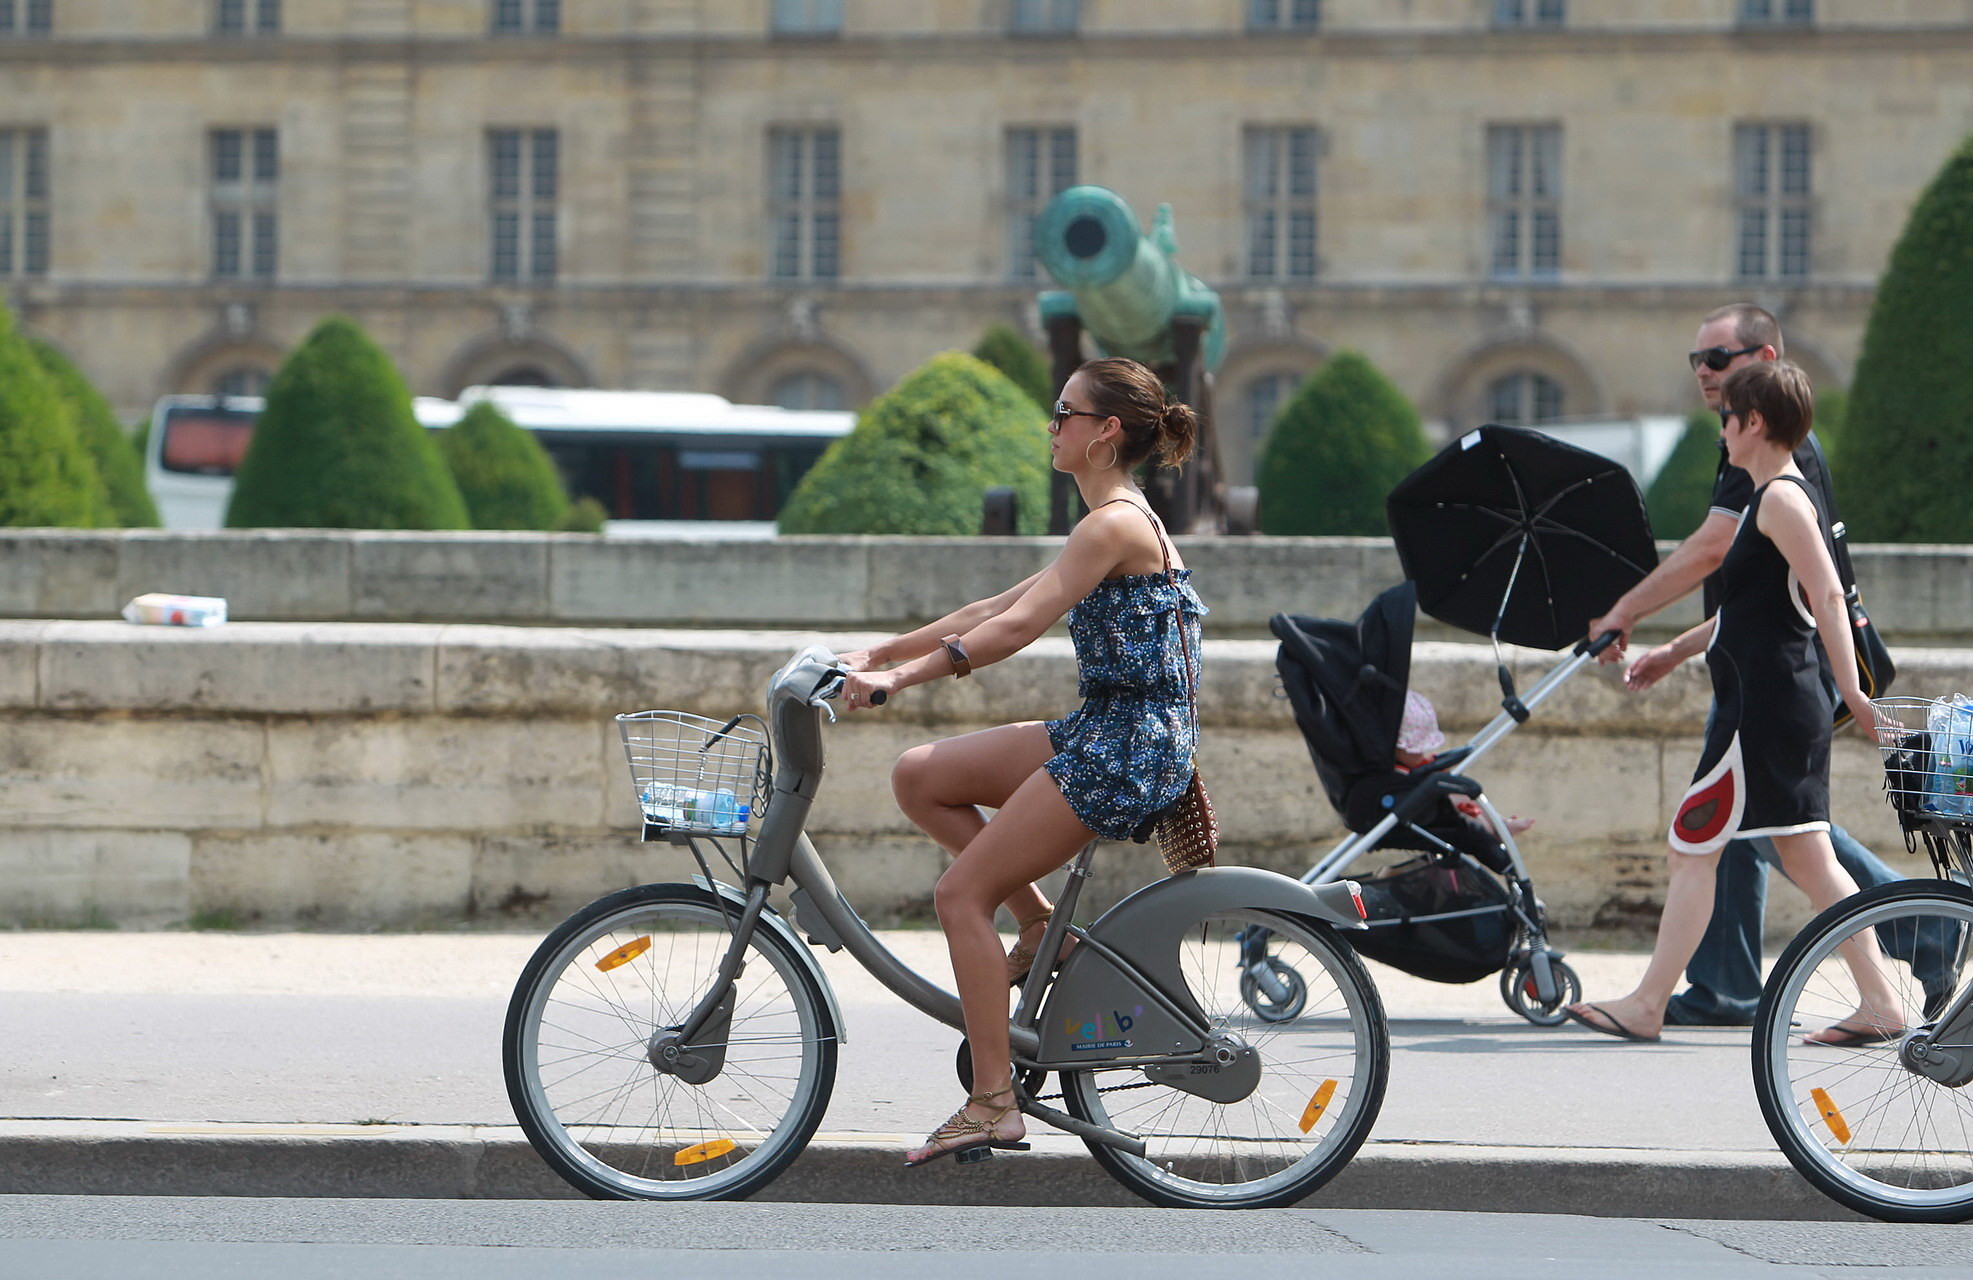 Jessica Alba leggy in Paris - riding a bike in mini dress #75343248